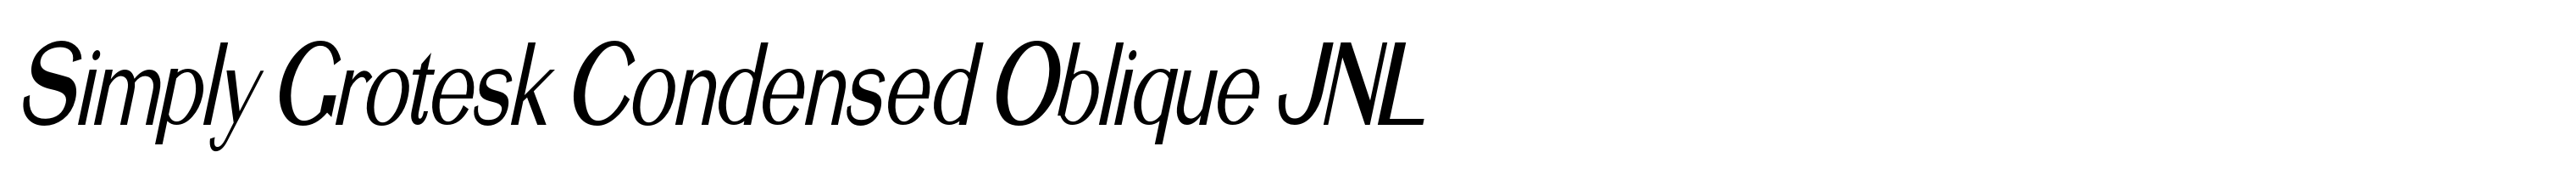 Simply Grotesk Condensed Oblique JNL